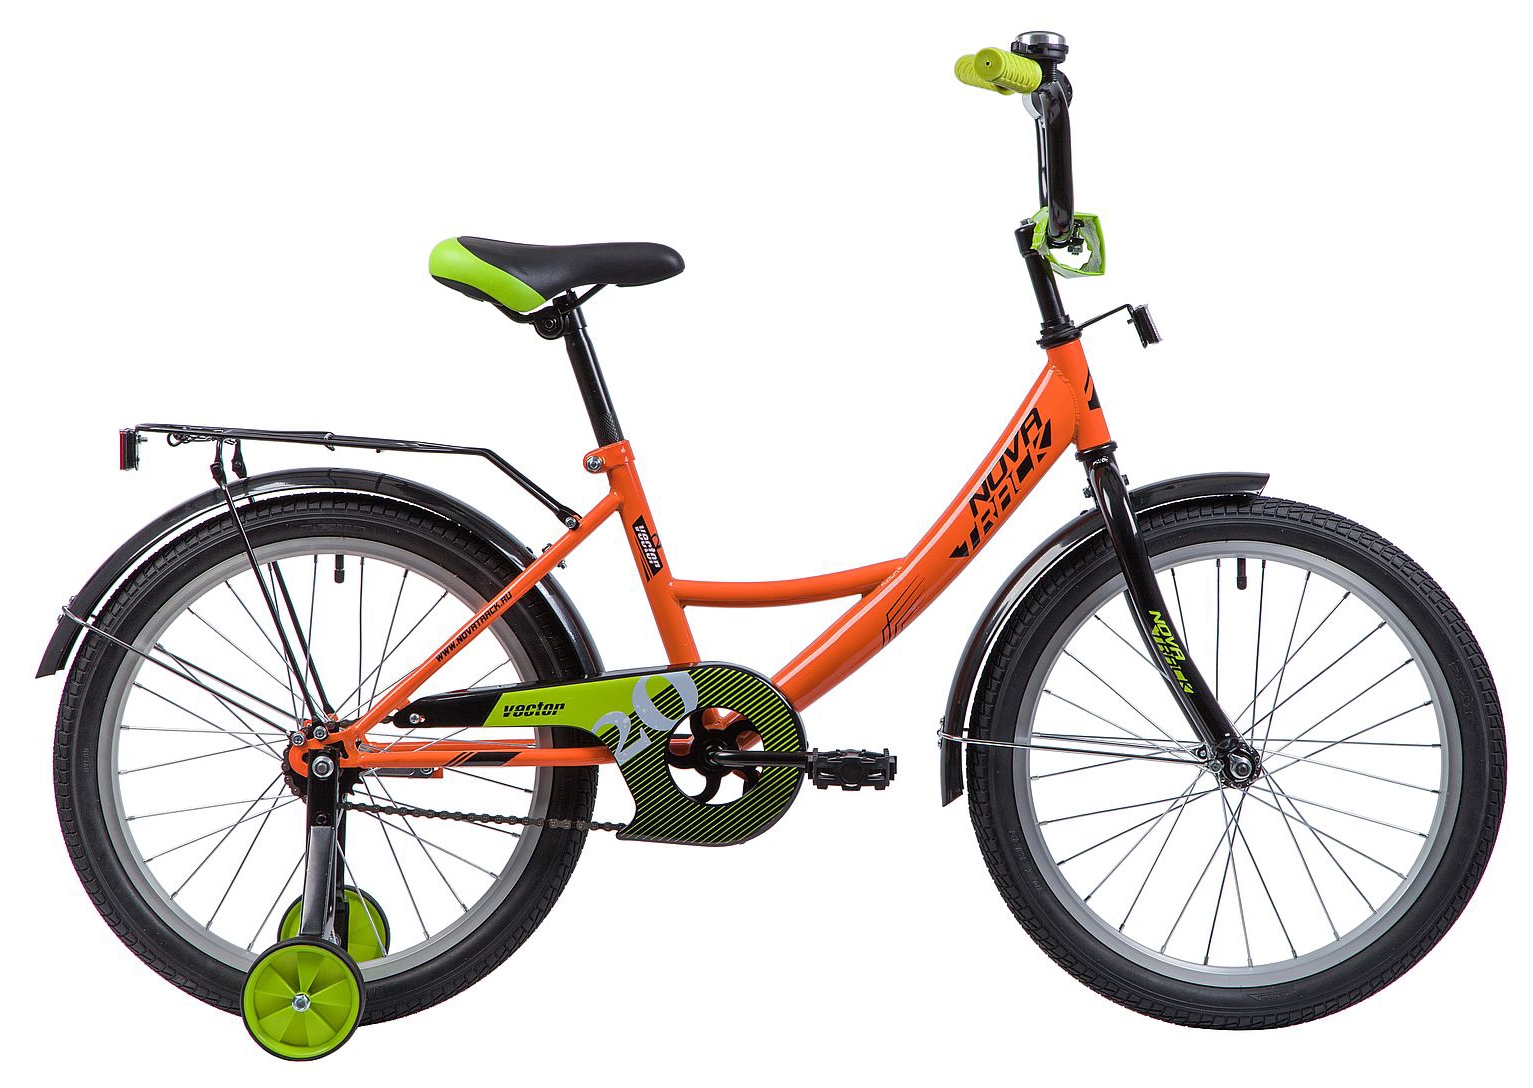  Отзывы о Детском велосипеде Novatrack Vector 20 2022